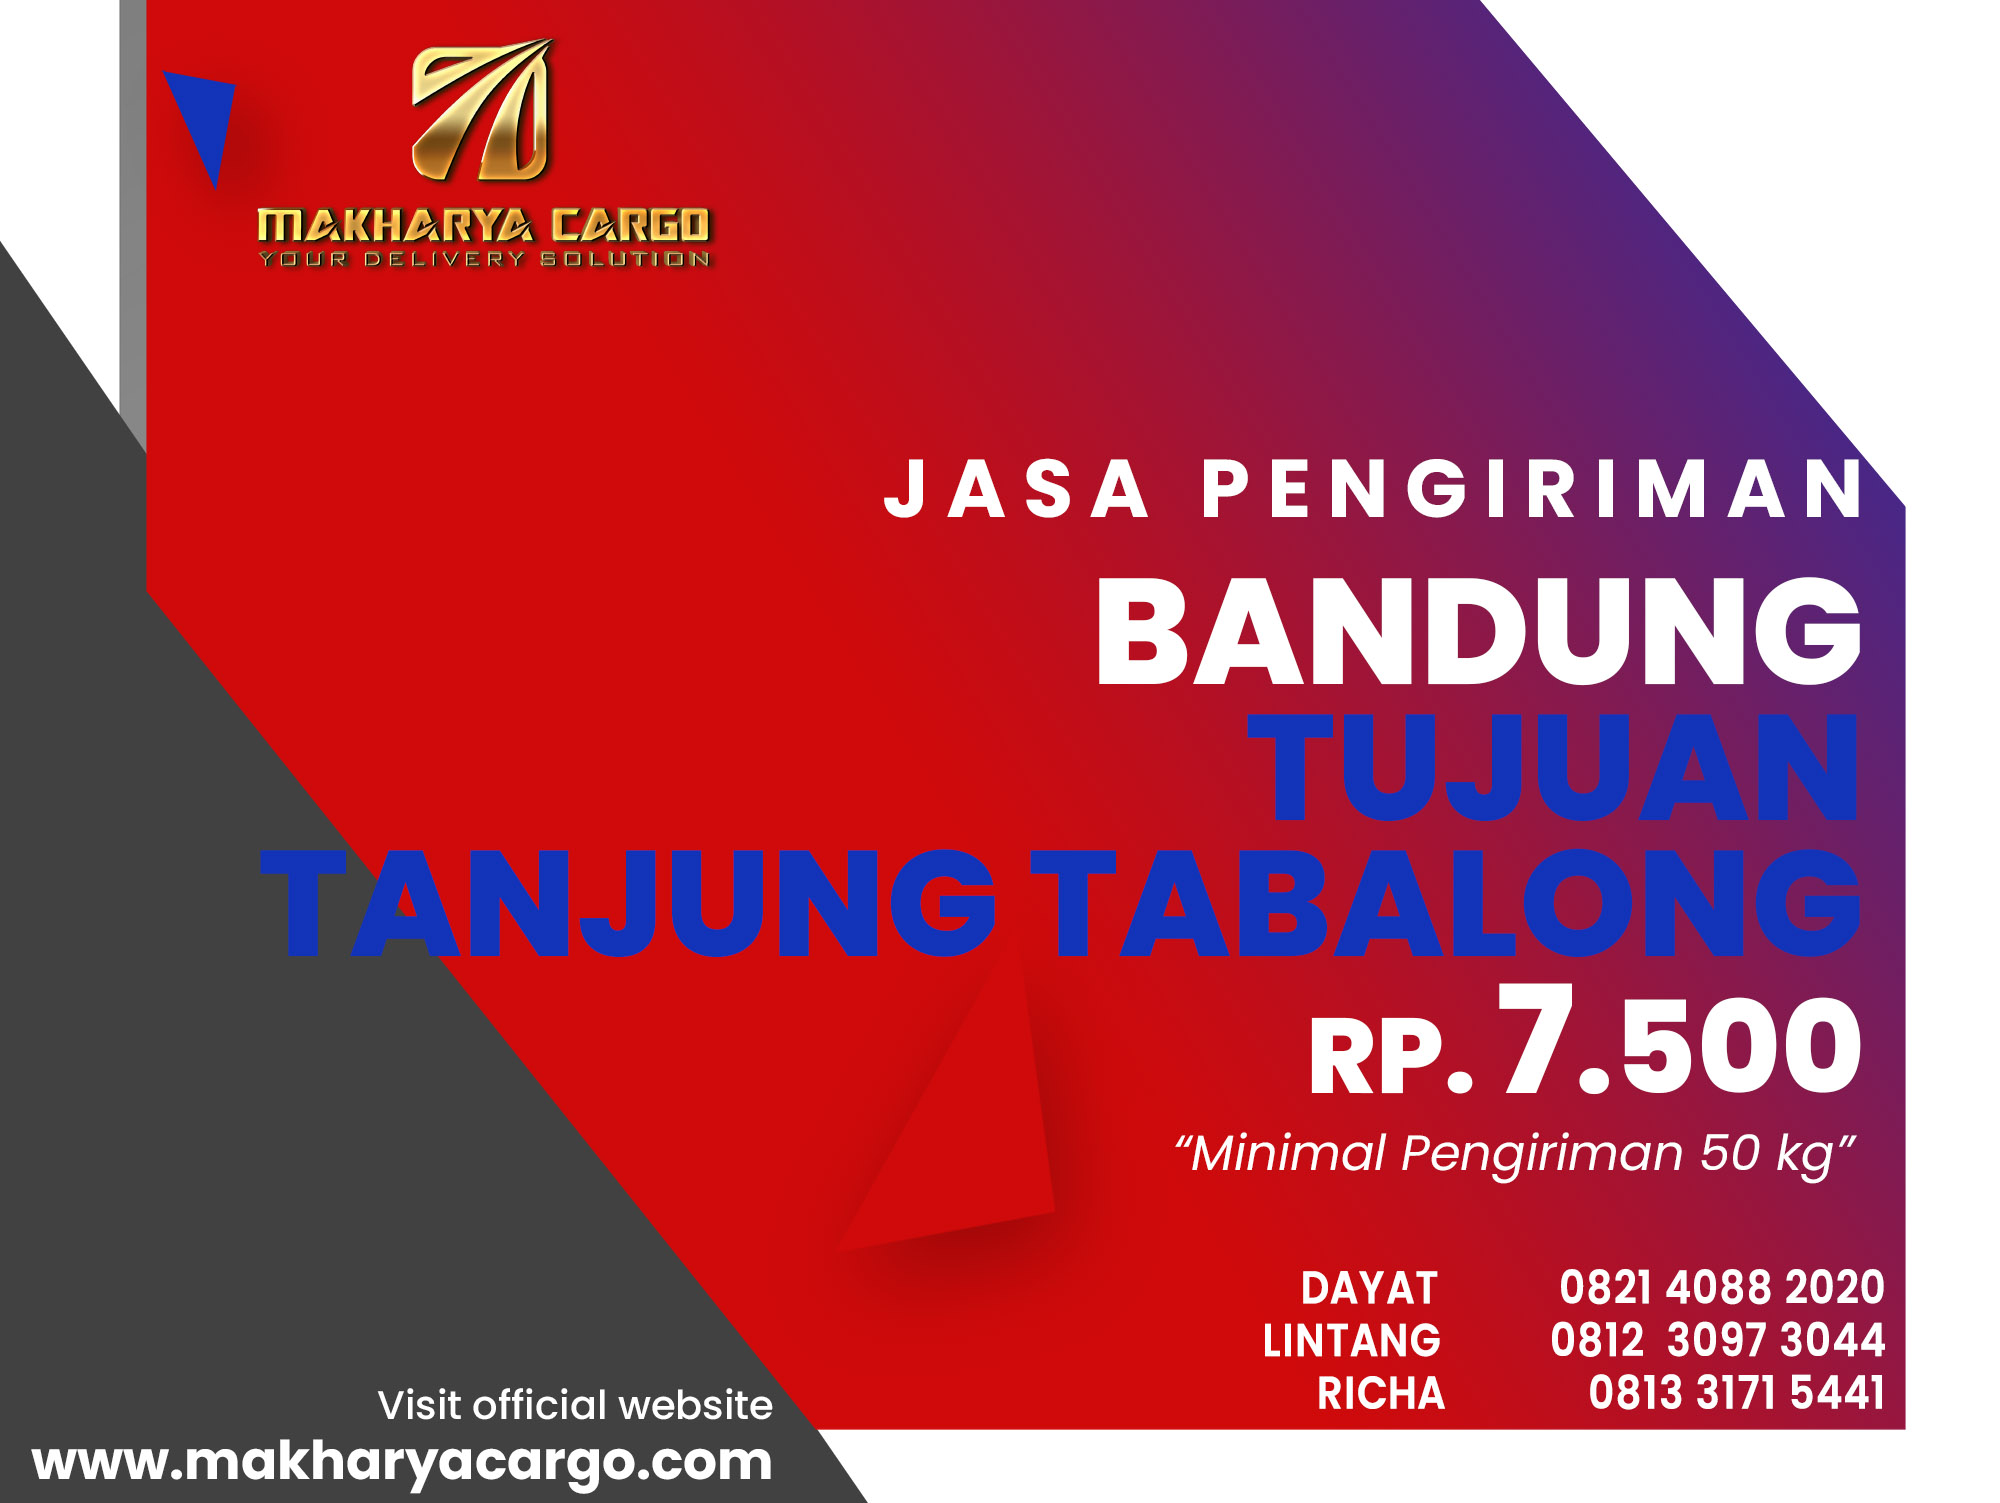 Jasa Pengiriman Bandung Tanjung Tabalong